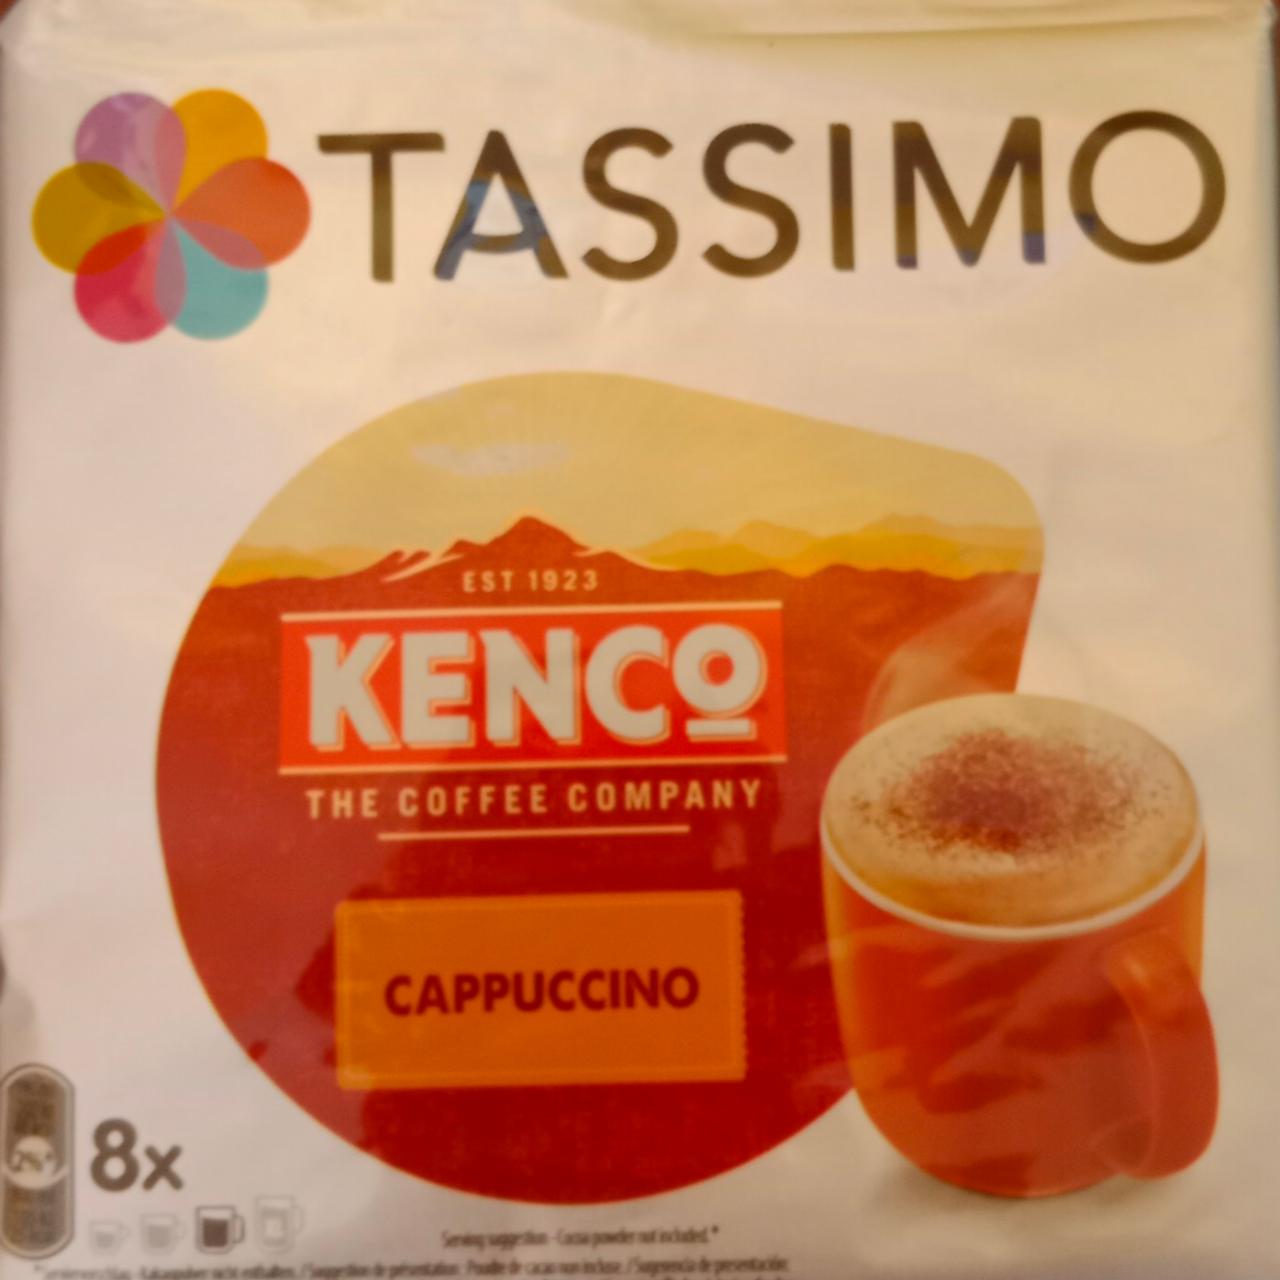 Kenco cappuccino Tassimo - kalorie, kJ a nutriční hodnoty